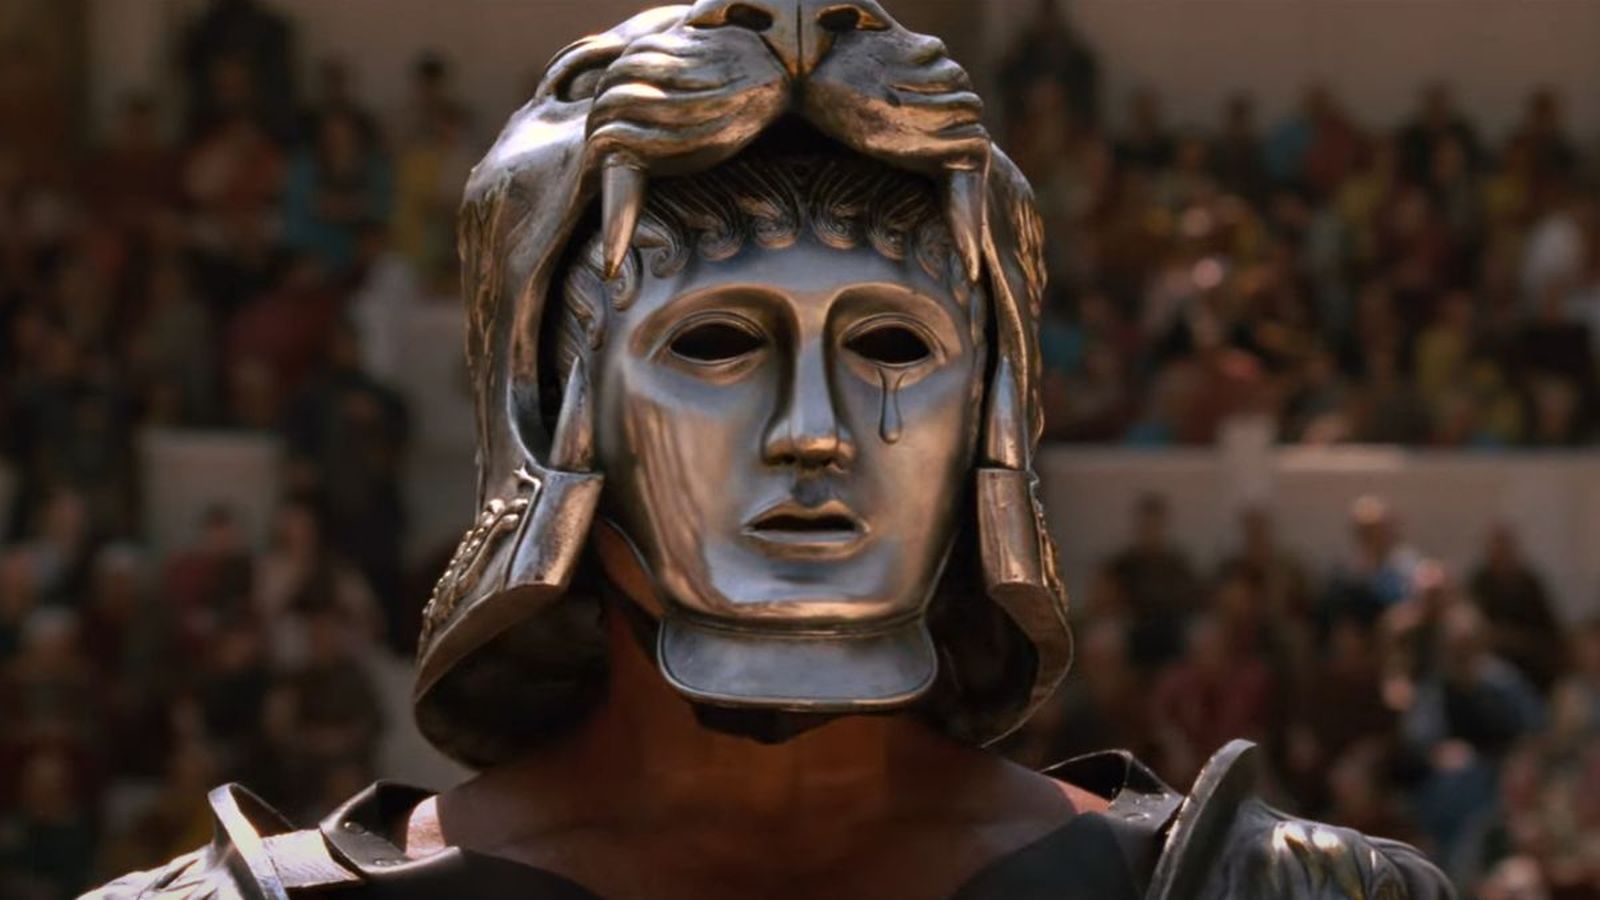 Il Gladiatore 2, le reazioni al test screening parlano di '160 minuti elettrizzanti': 'Merita l'Oscar'